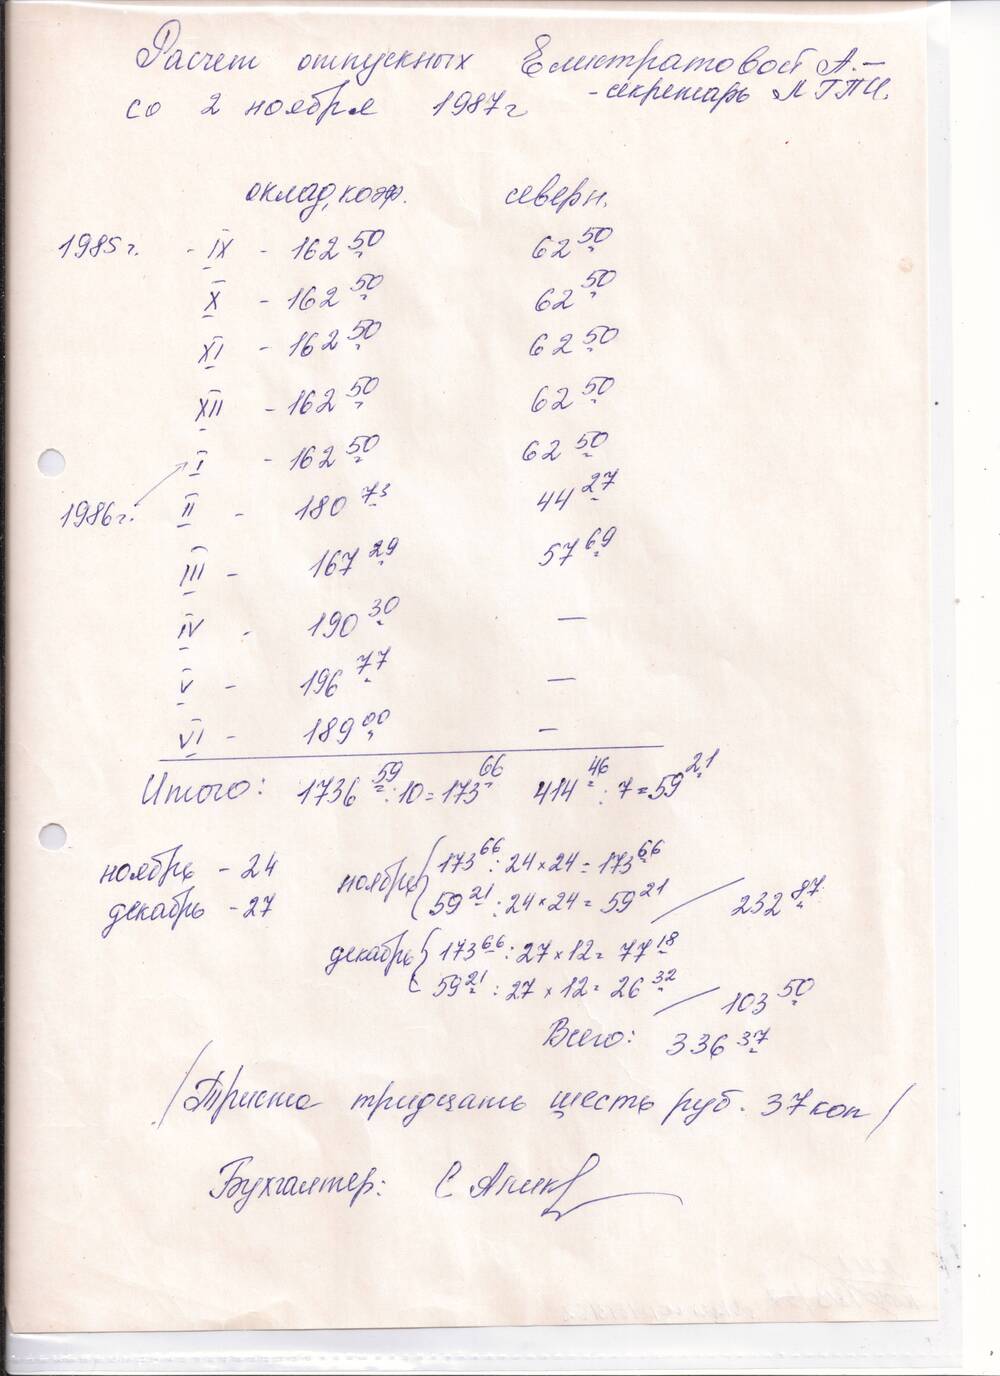 Расчет отпускных Елистратовой А. – секретарь ЛГПИ от 02.11.1987г бухгалтер подпись